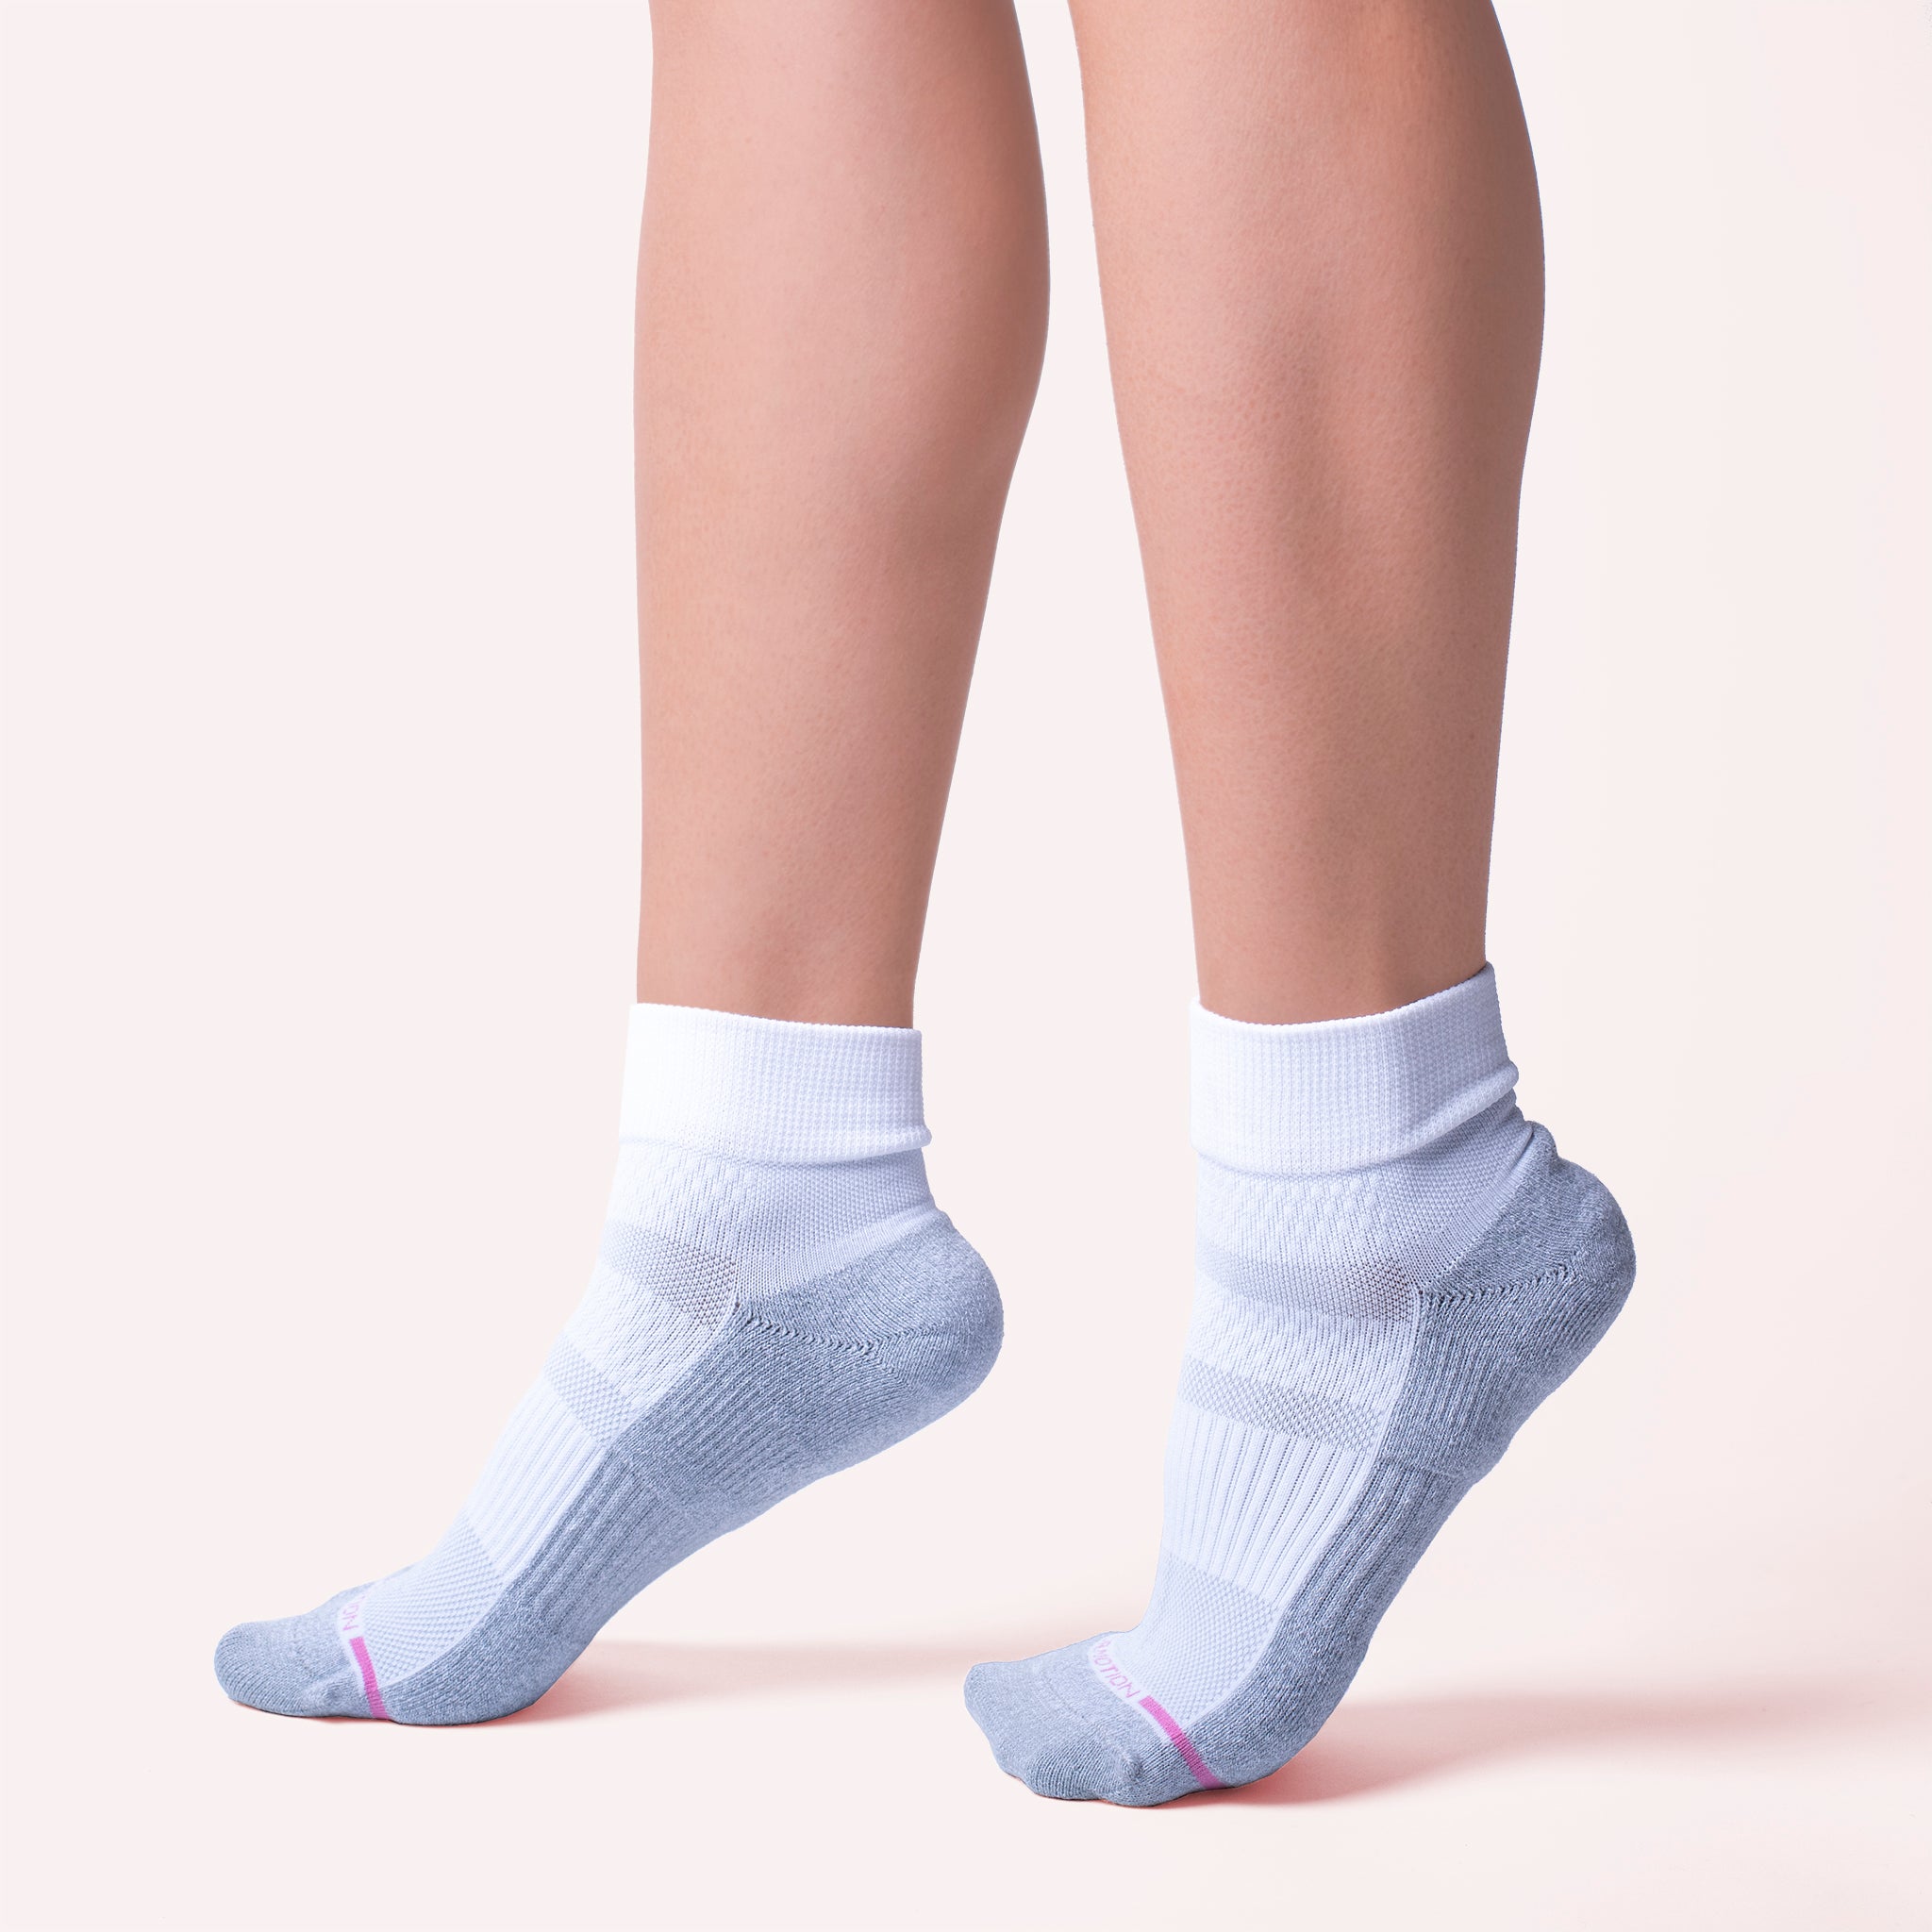 Quarter Compression Socks For Women, Dr. Motion